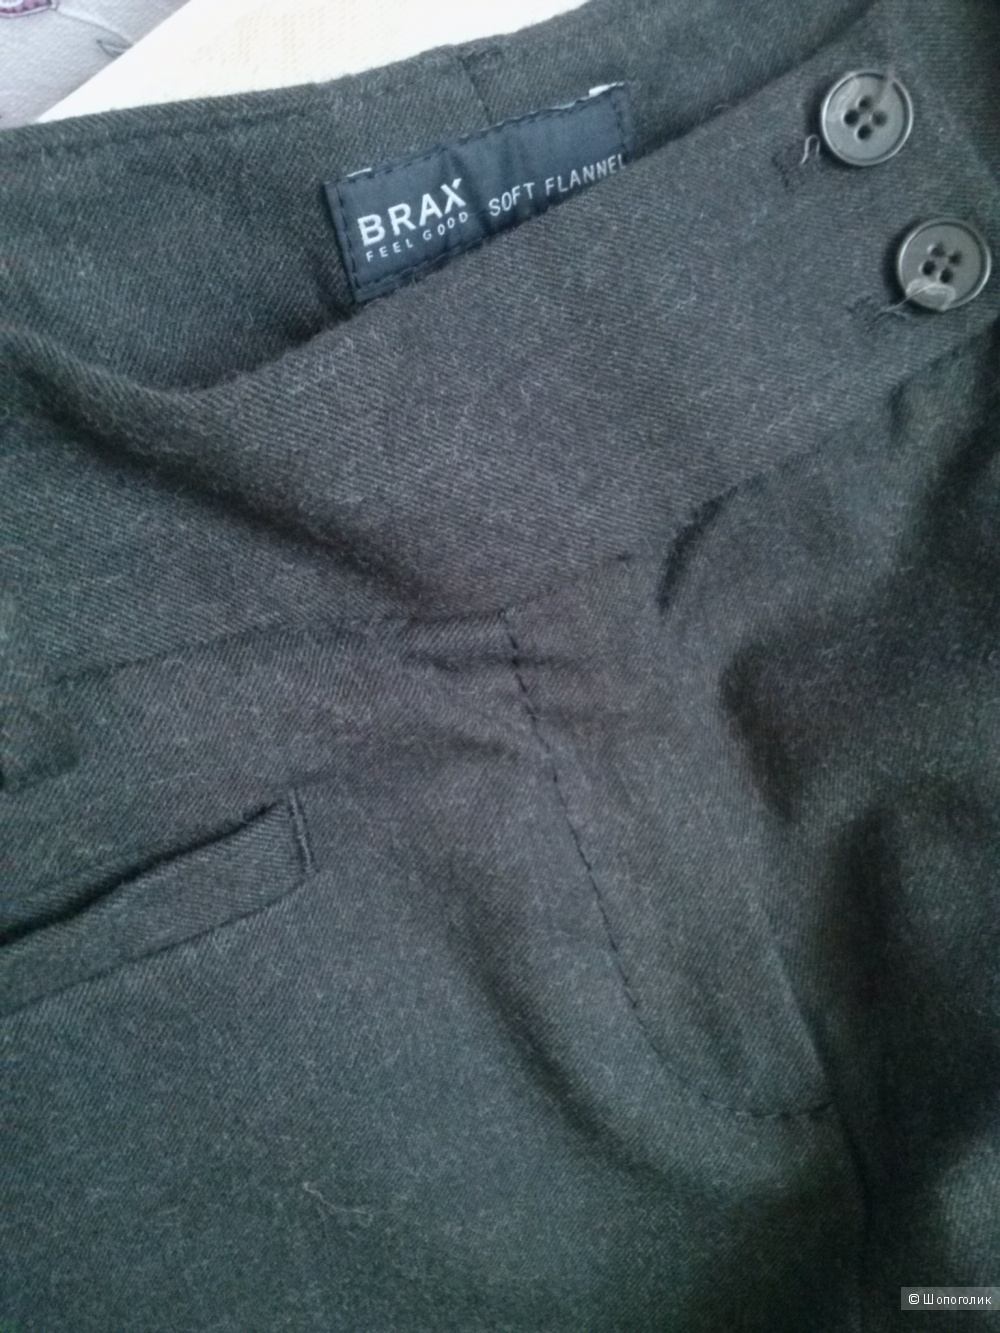 BRAX новые брюки, из 100% шерсти, шоколадного цвета, 29\34 размер, вмагазине Другой магазин — на Шопоголик